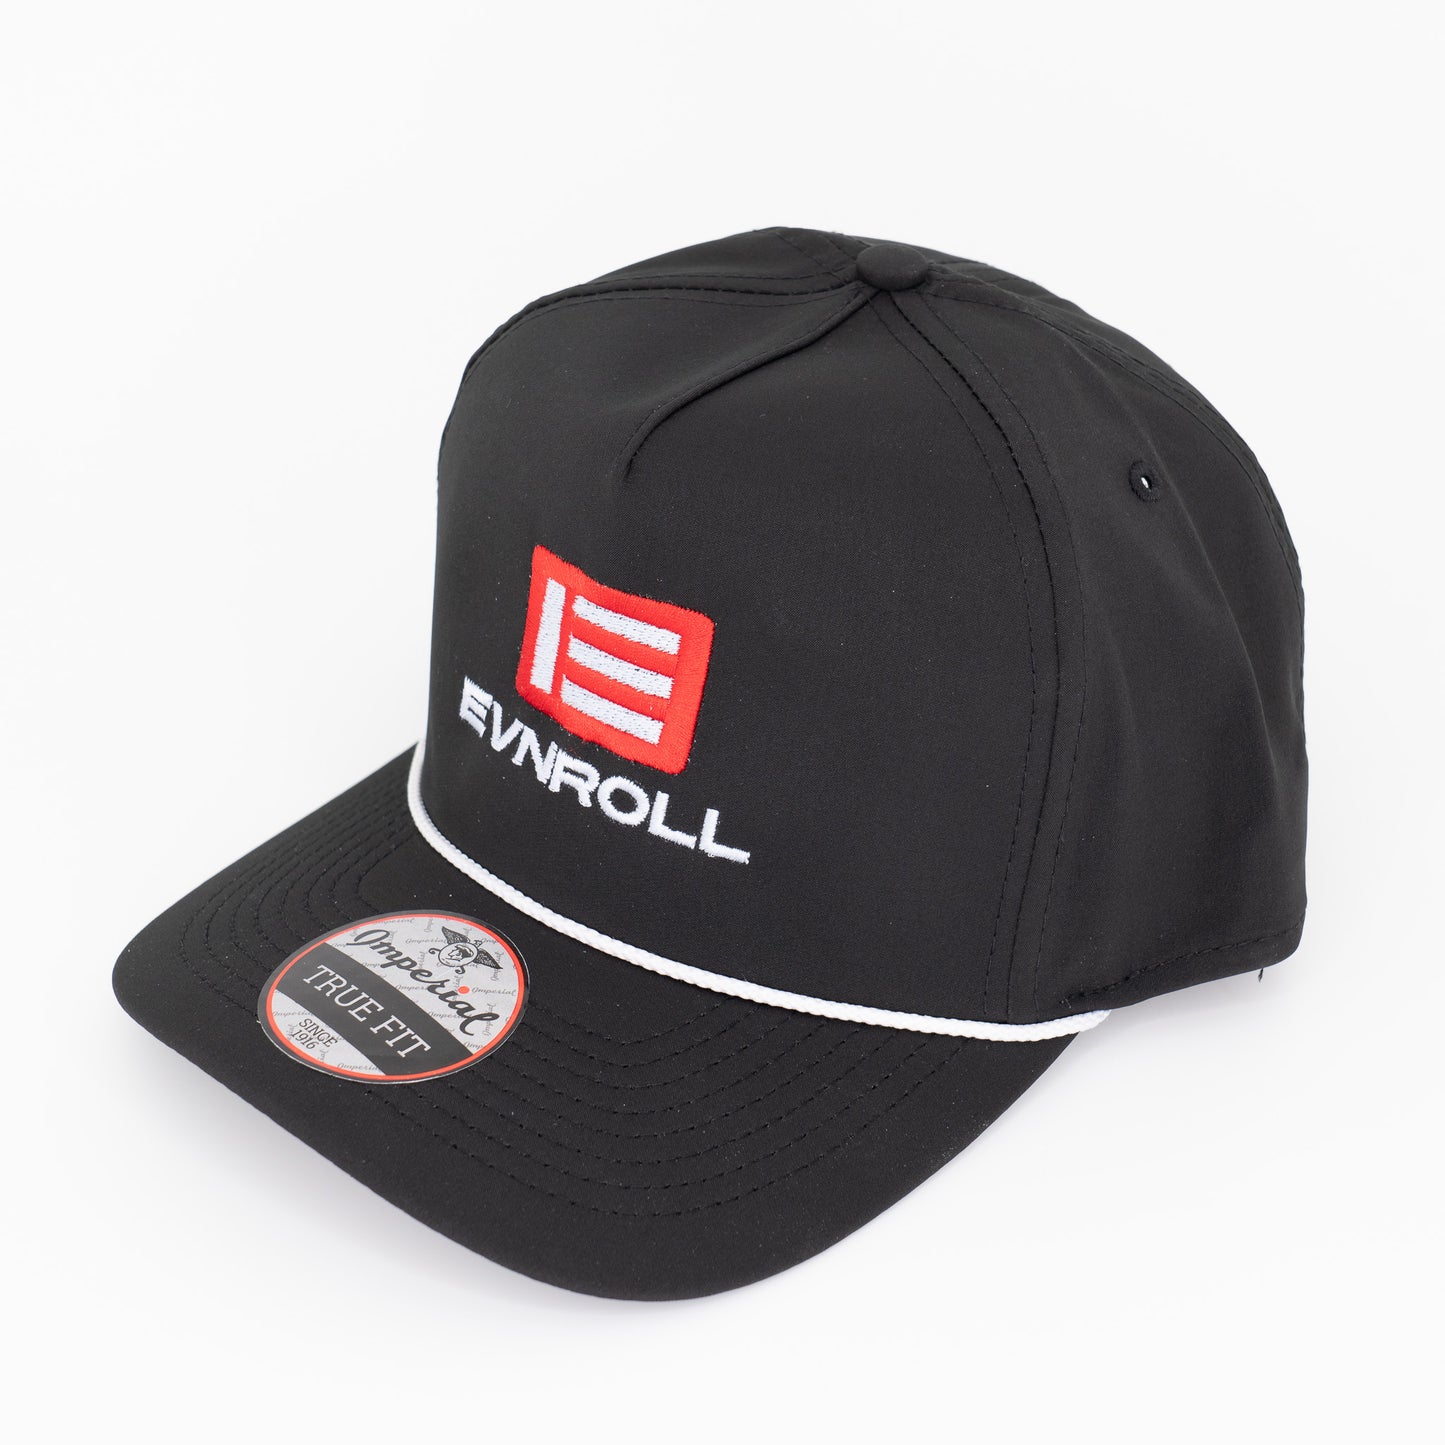 Hat – Trucker Style Hat